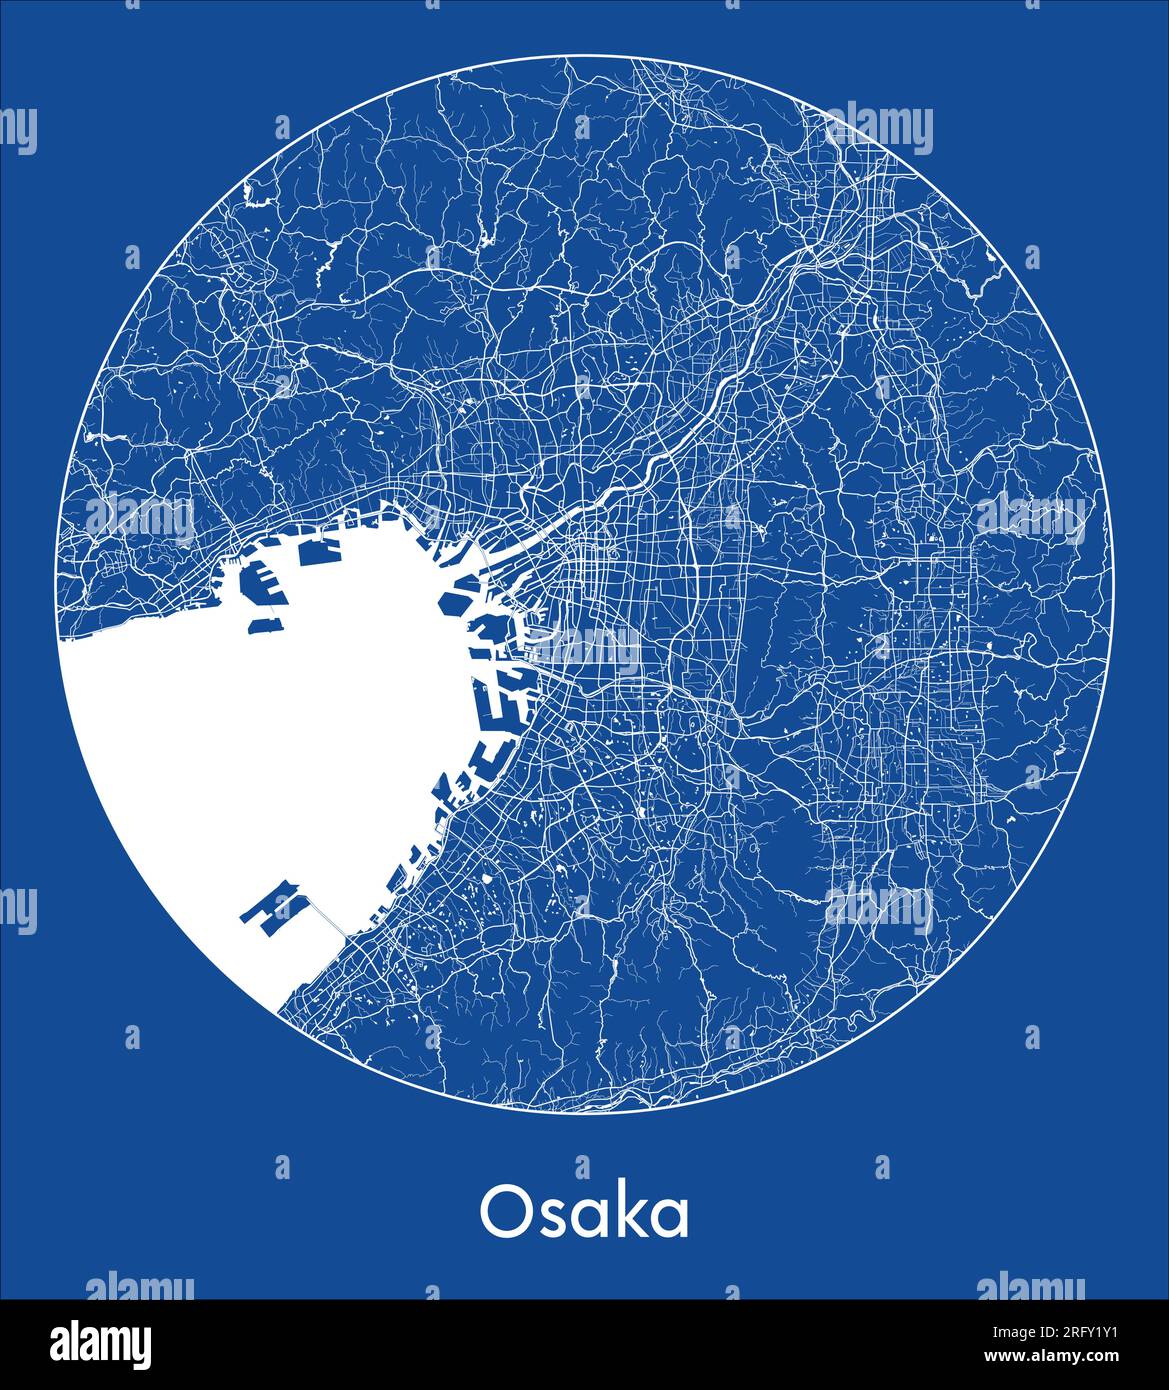 Plan de la ville Osaka Japon Asie bleu imprimer rond cercle illustration vectorielle Illustration de Vecteur